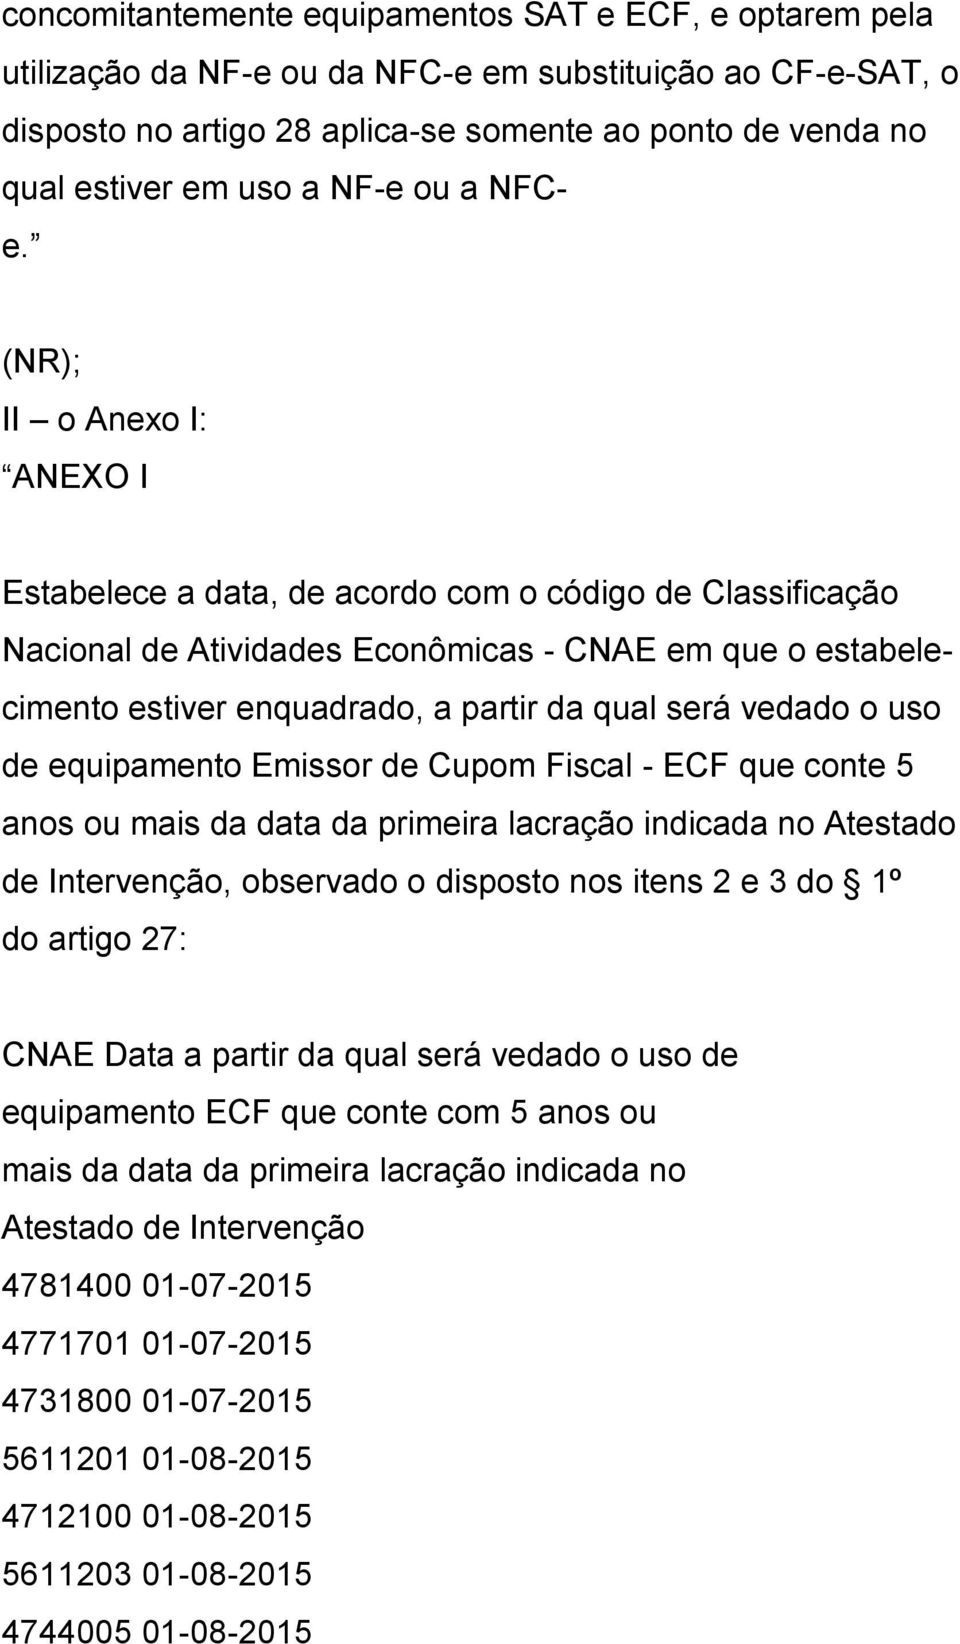 (NR); II o Anexo I: ANEXO I Estabelece a data, de acordo com o código de Classificação Nacional de Atividades Econômicas - CNAE em que o estabelecimento estiver enquadrado, a partir da qual será